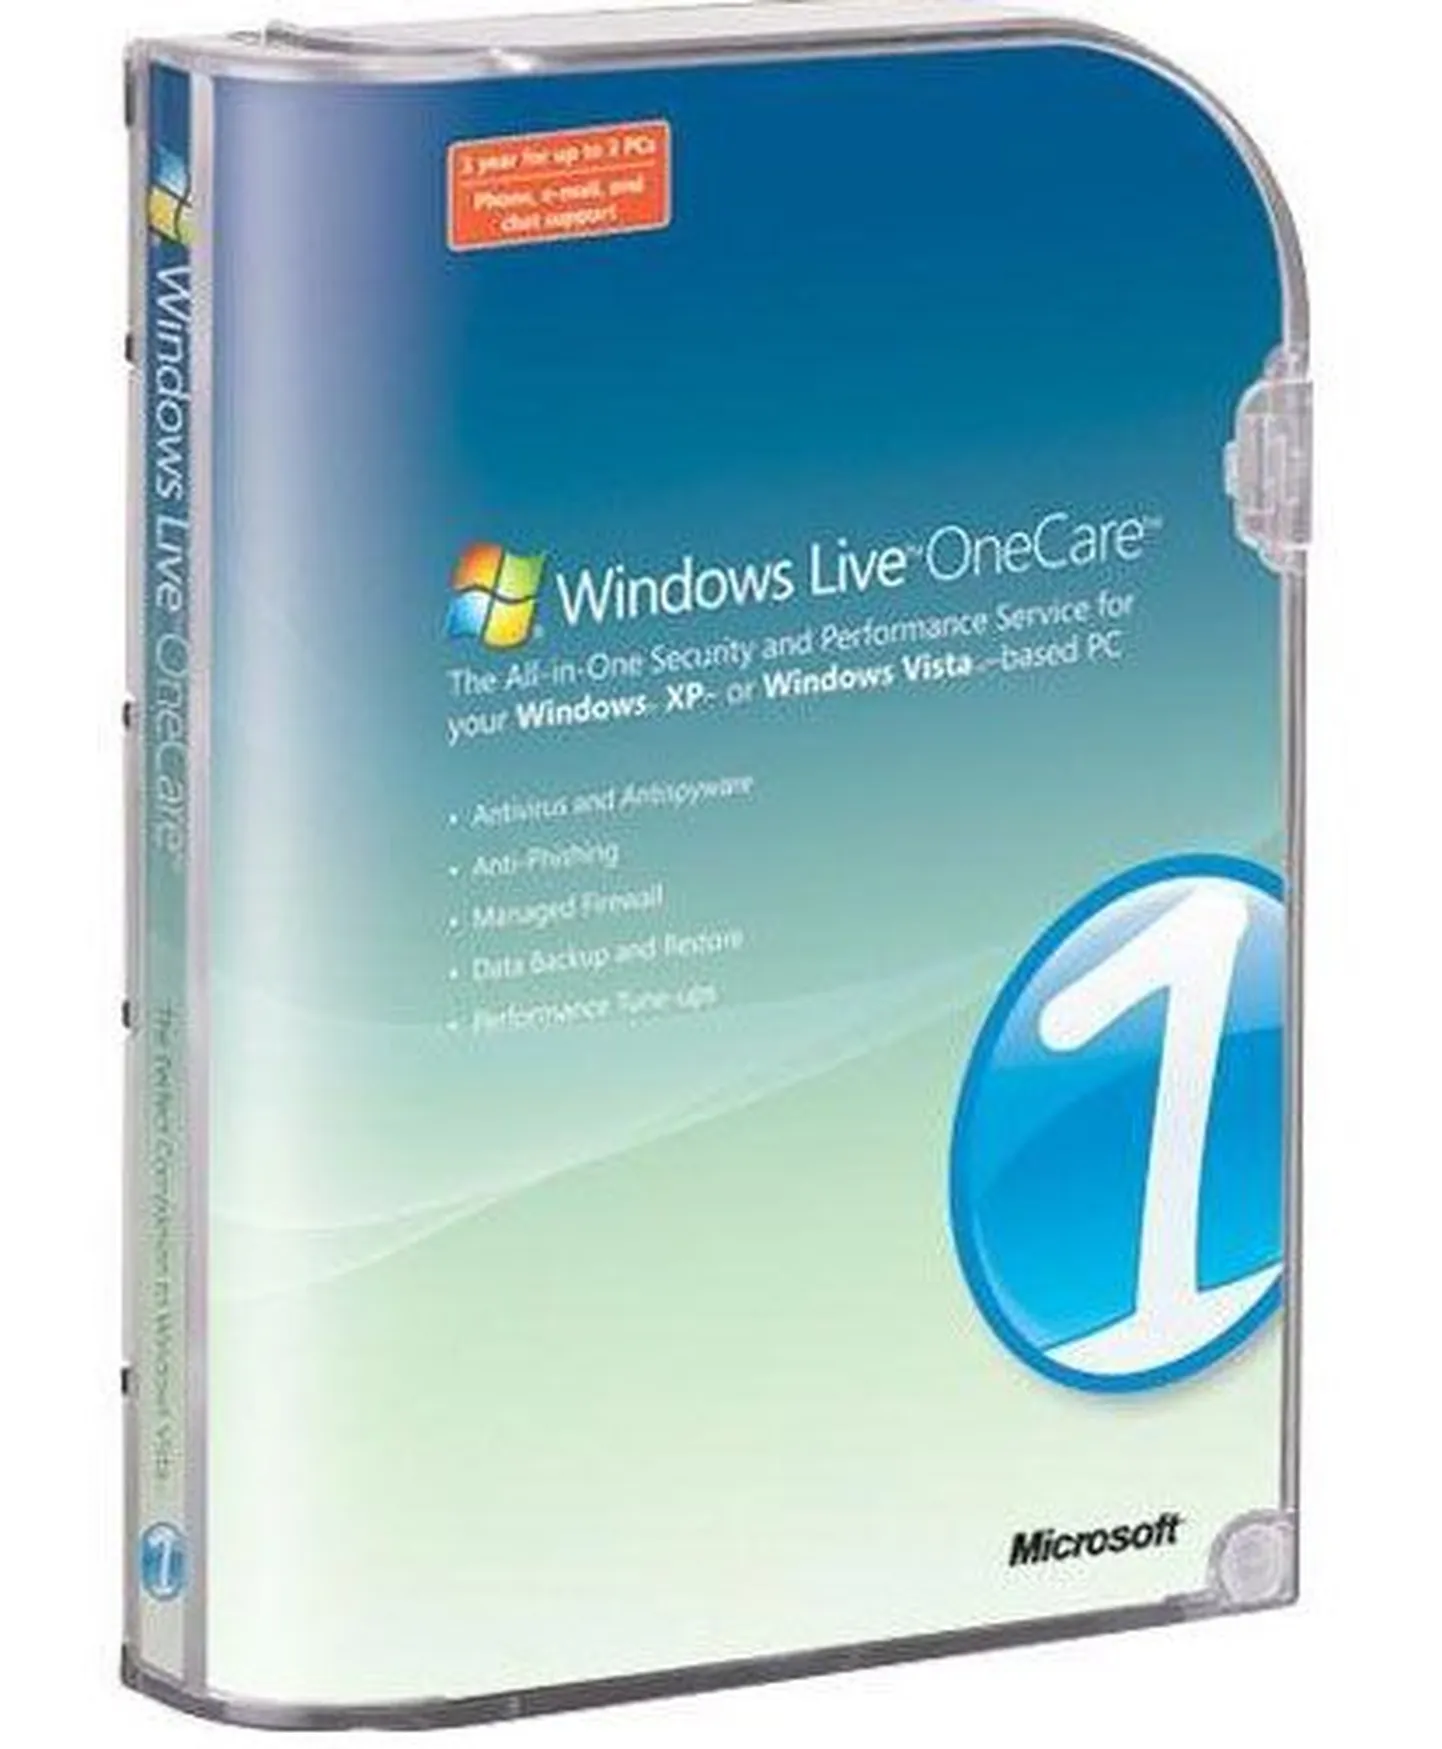 Microsoft vahetab tasulise viirustõrjeprogrammi Onecare tasuta tarkvara vastu. Pildil Onecare`i pakend.